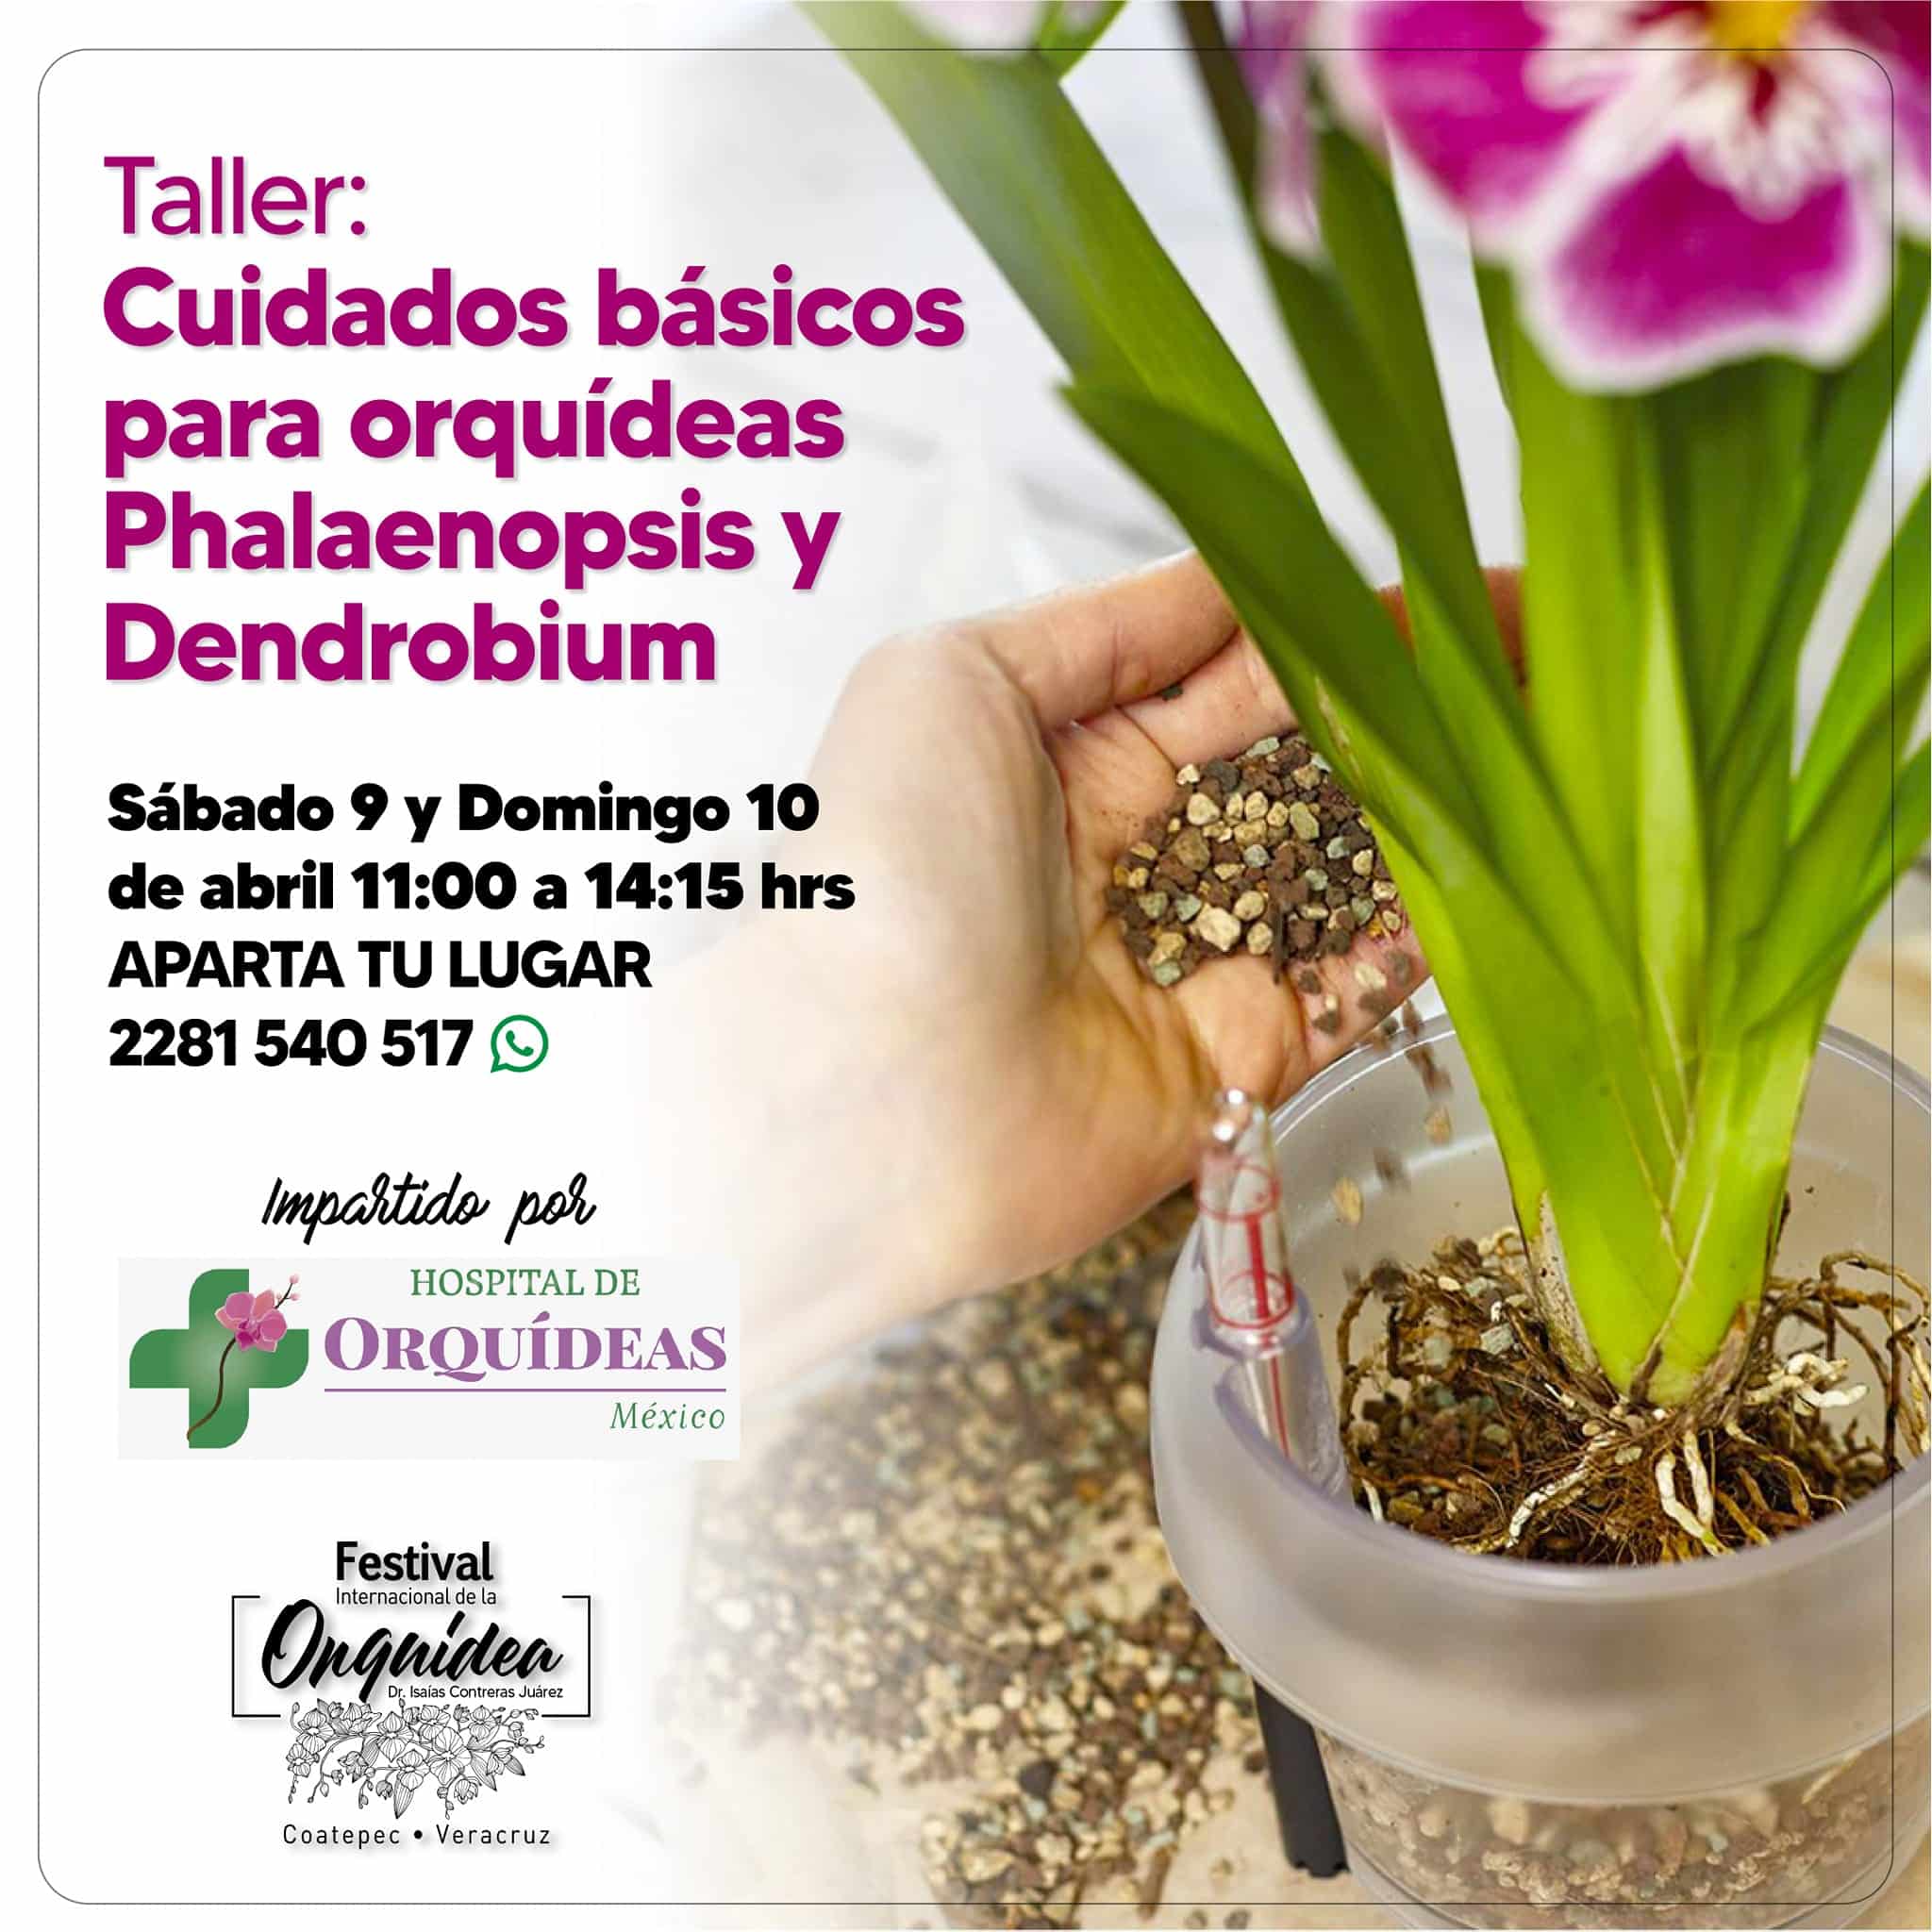 Invitación al Festival Internacional de la Orquídea.